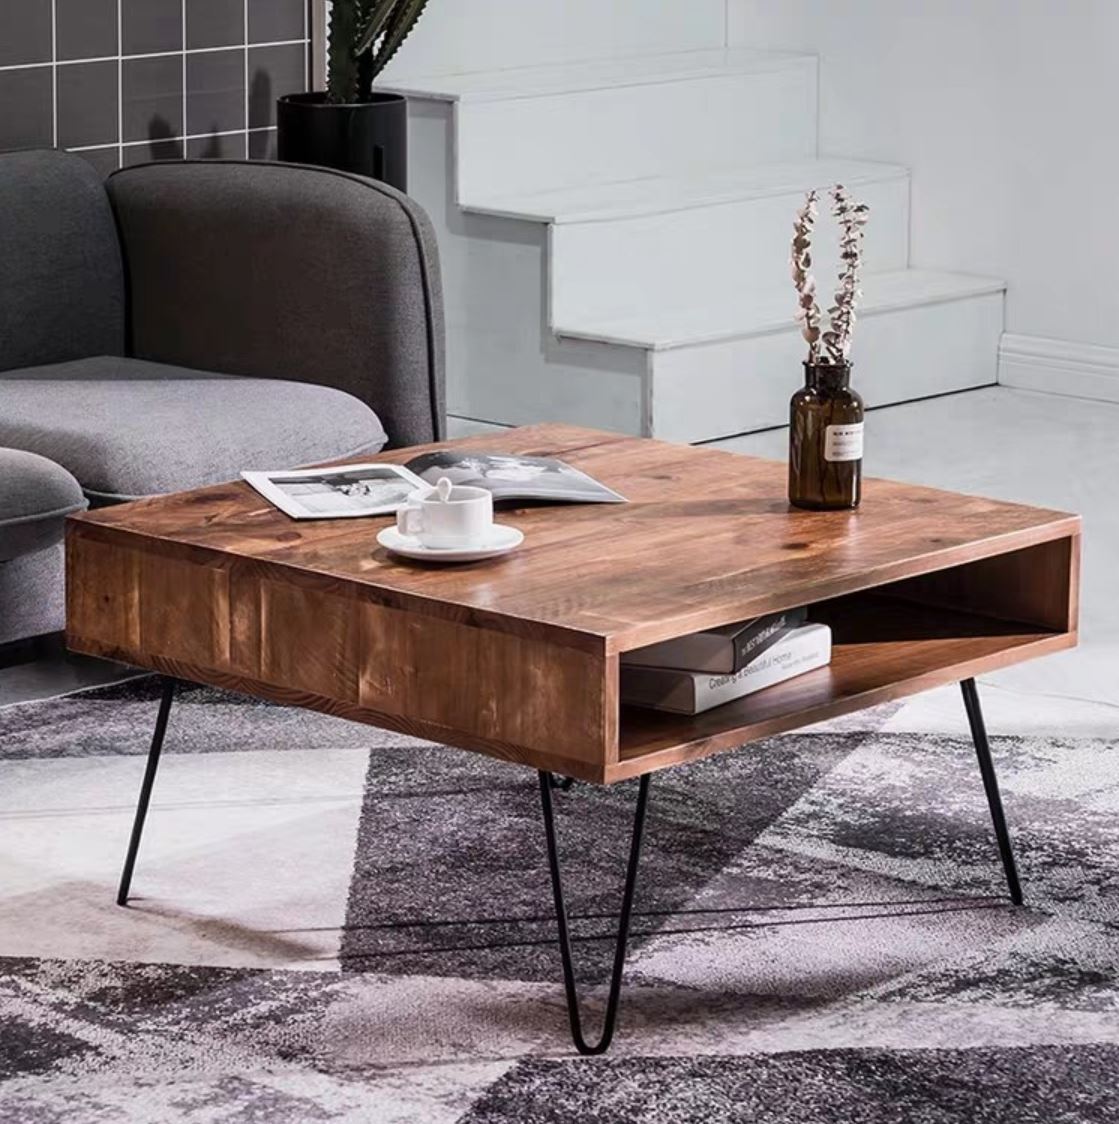 SAGE Modern Rustic Industrial Solid Wood Coffee Table